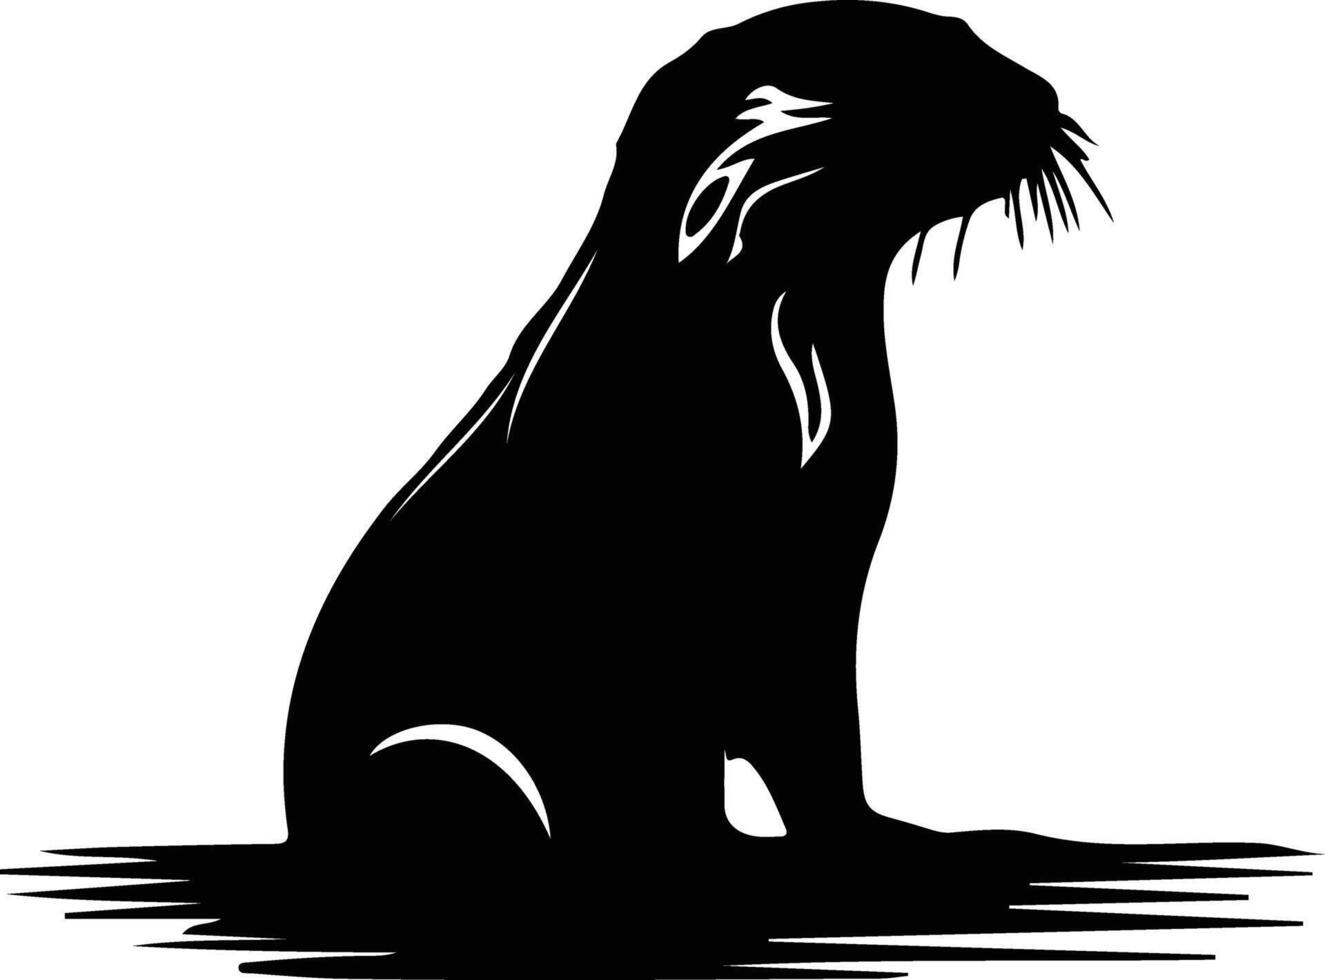 otter river black silhouette vector